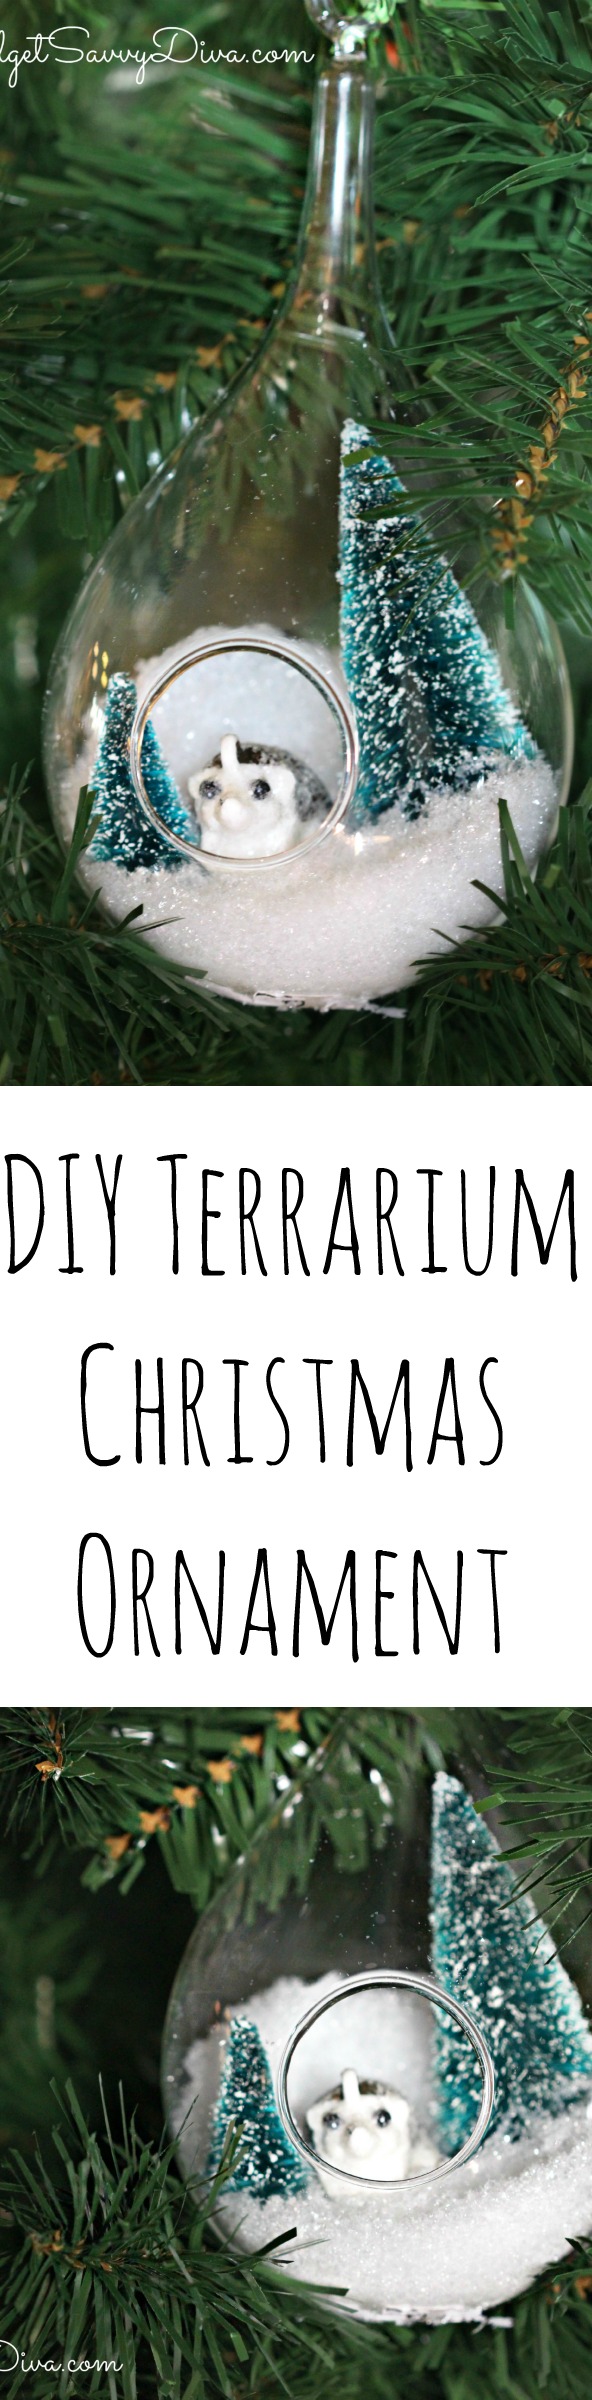 How to Make a Terrarium Christmas Ornament